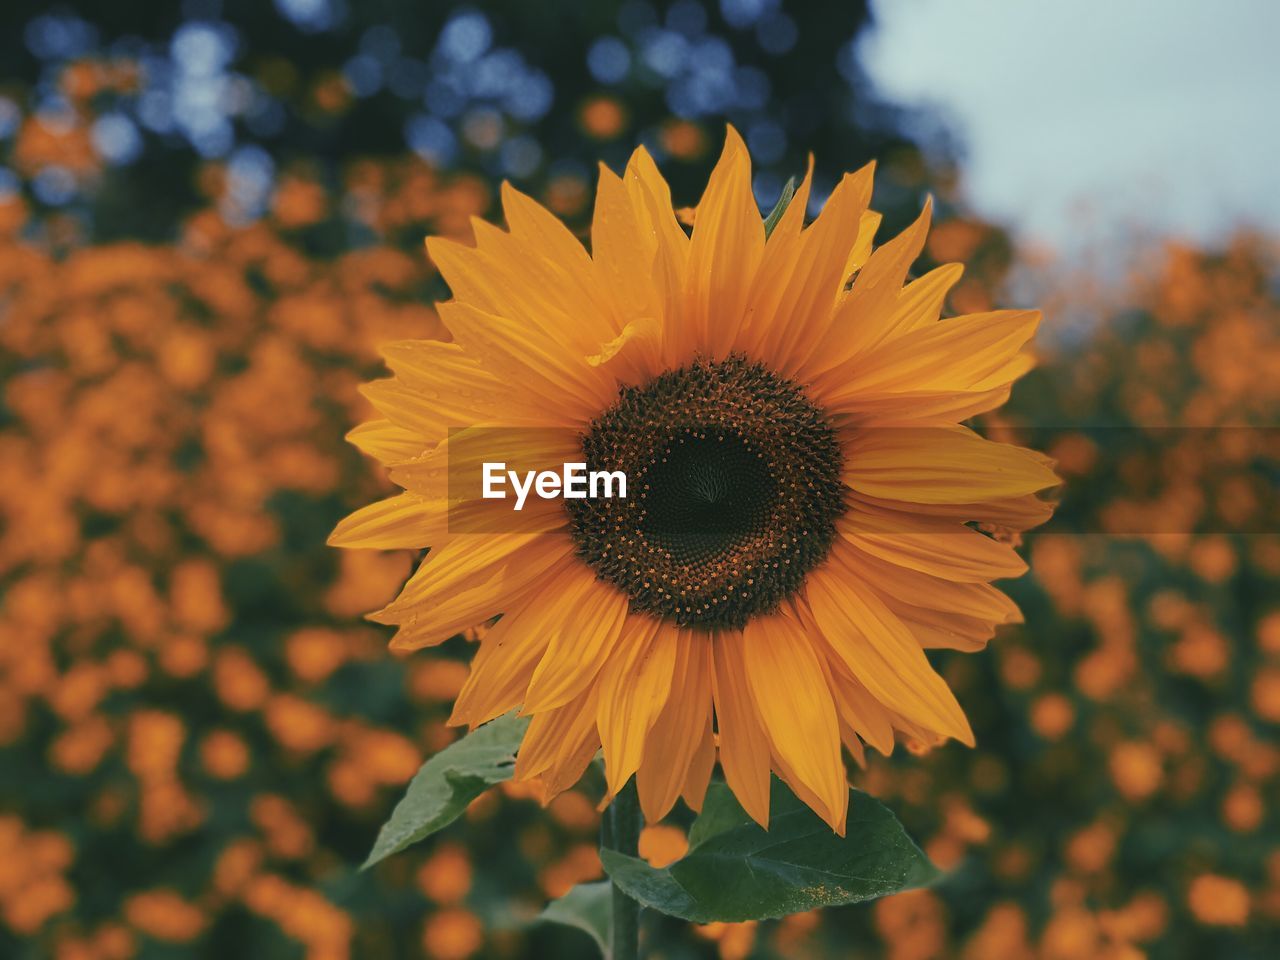 Sunflower in iringa